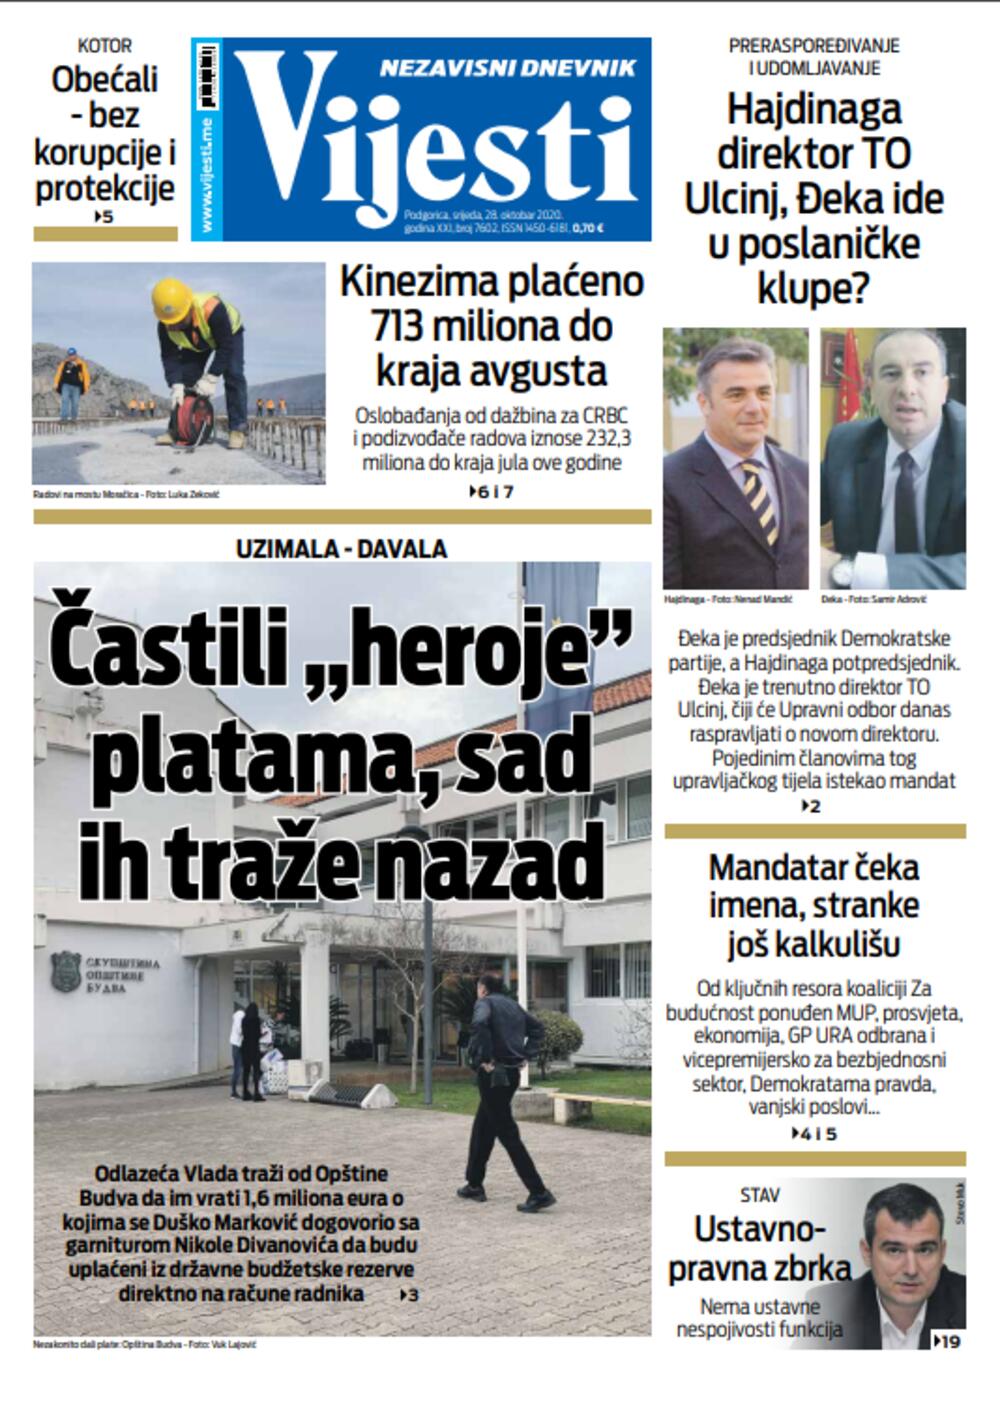 Naslovna strana "Vijesti" za 28. oktobar, Foto: Vijesti